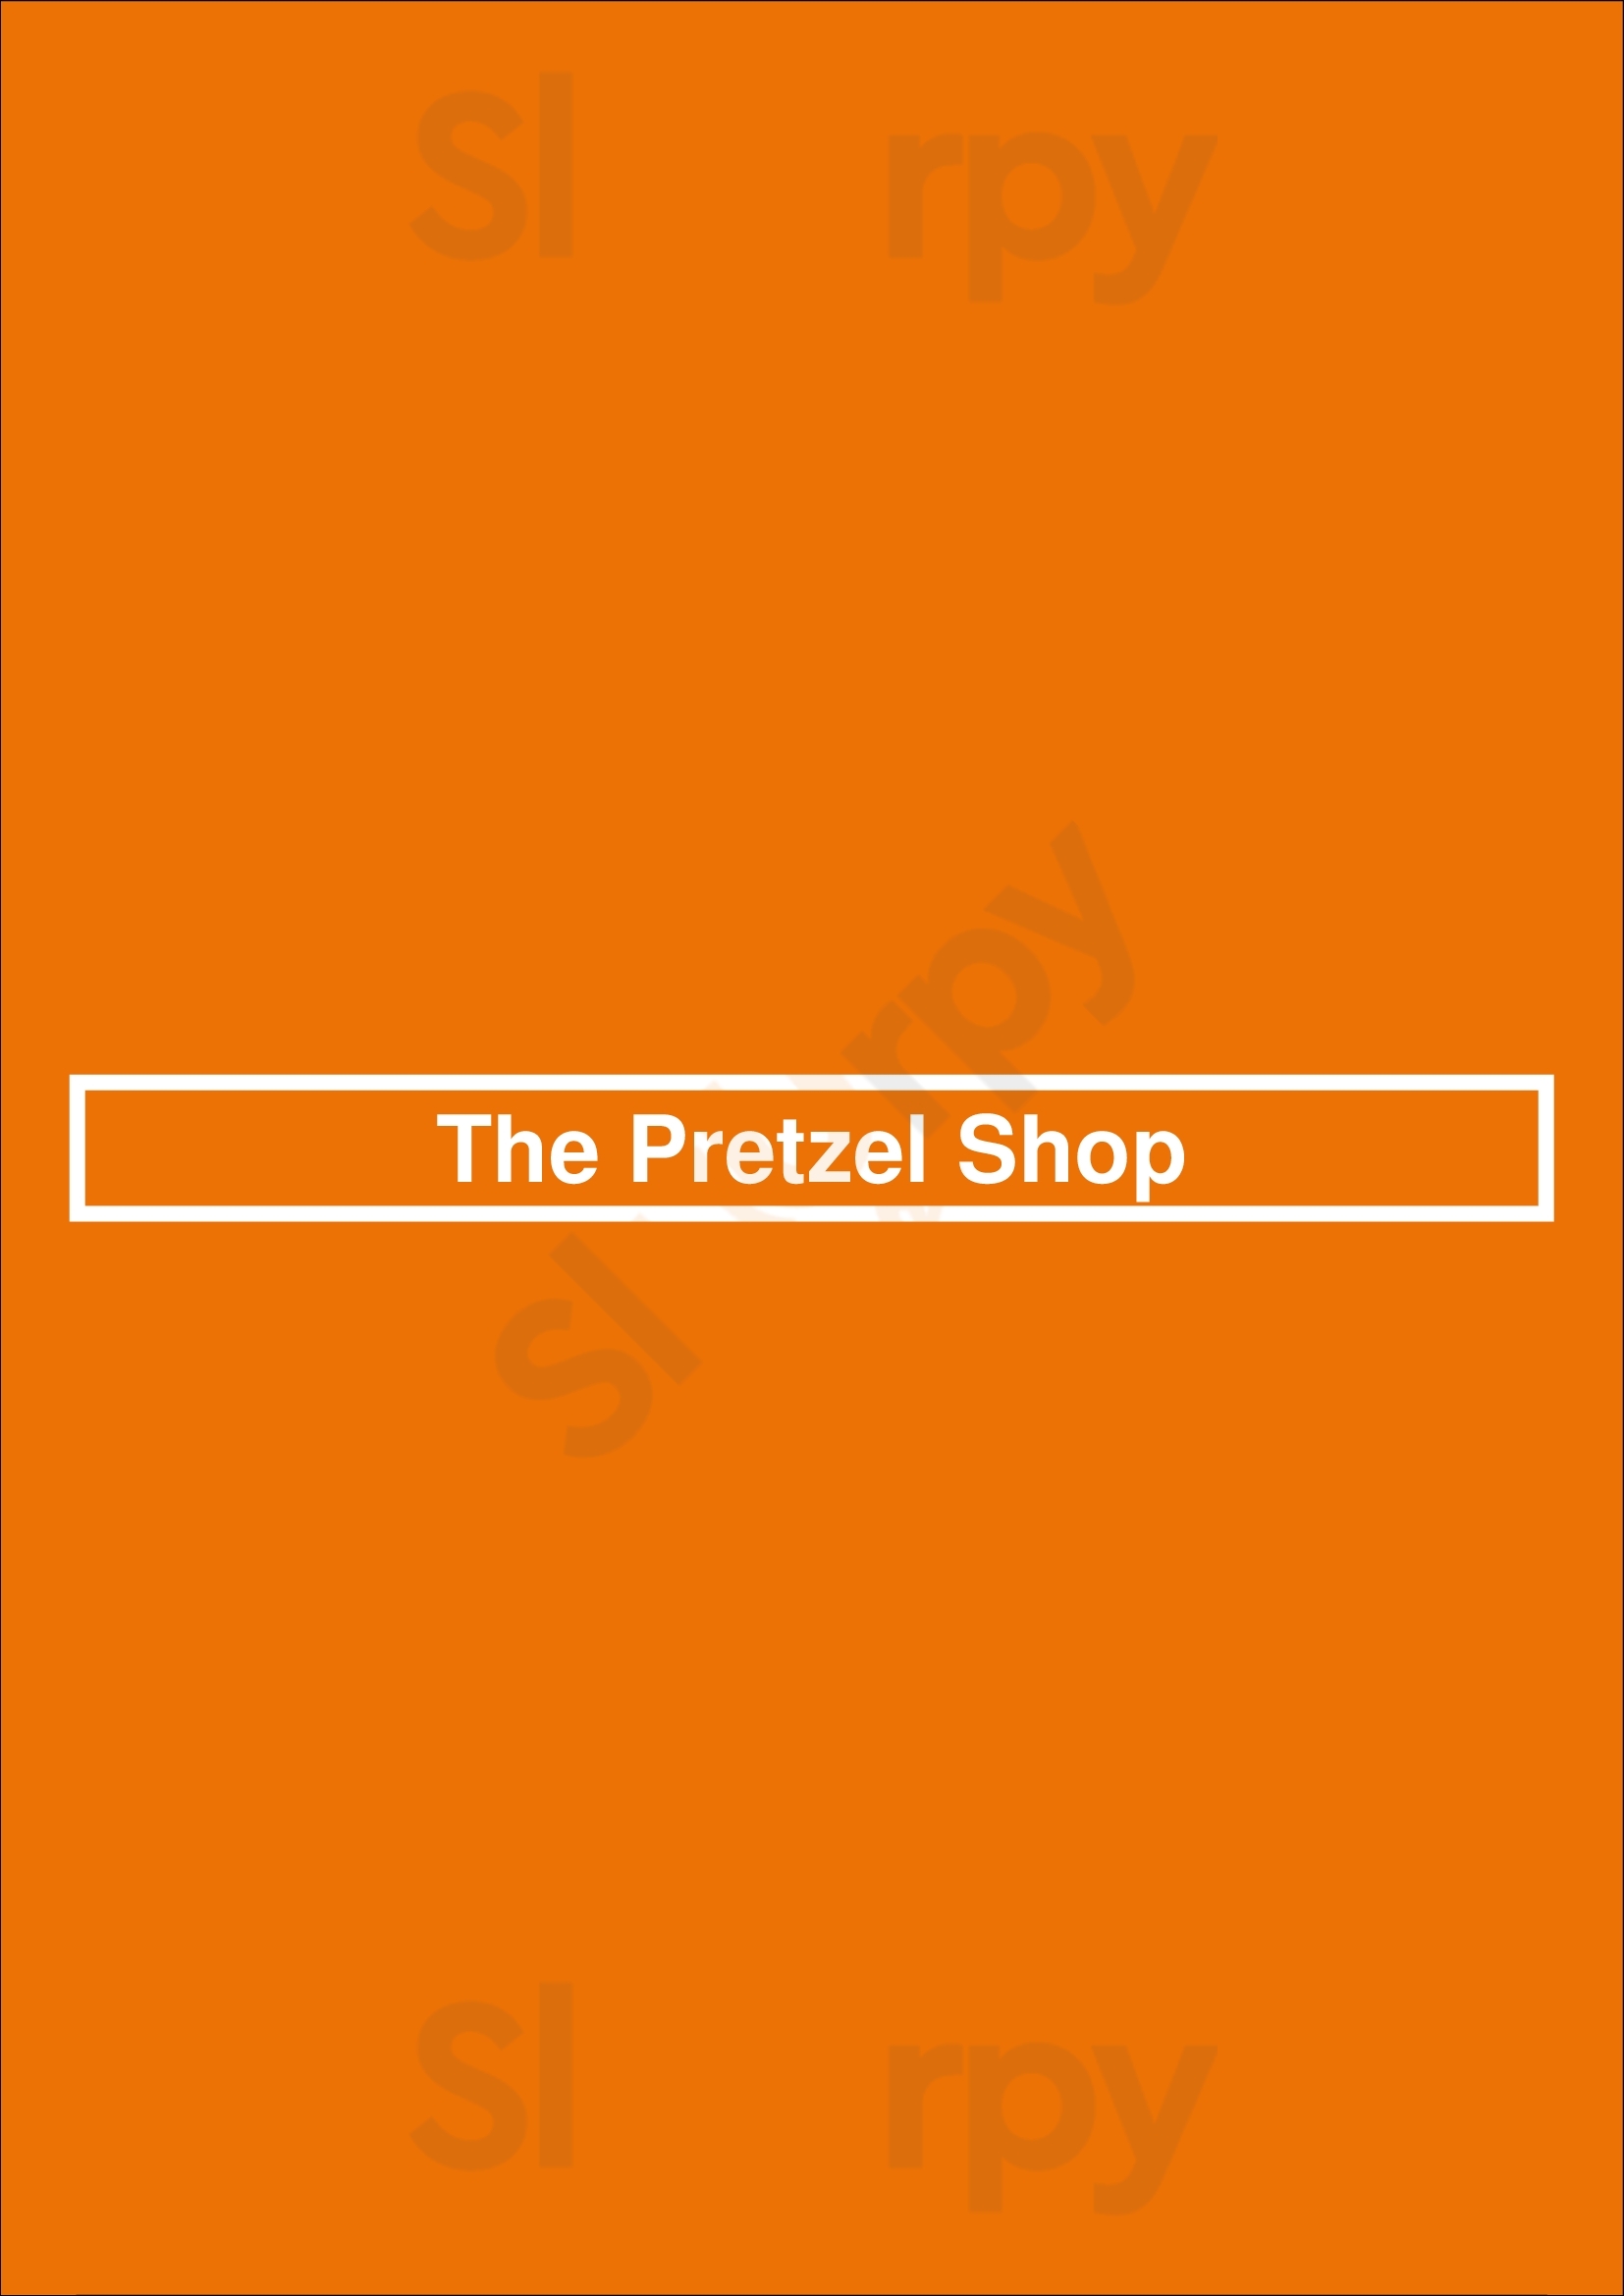 The Pretzel Shop Pittsburgh Menu - 1